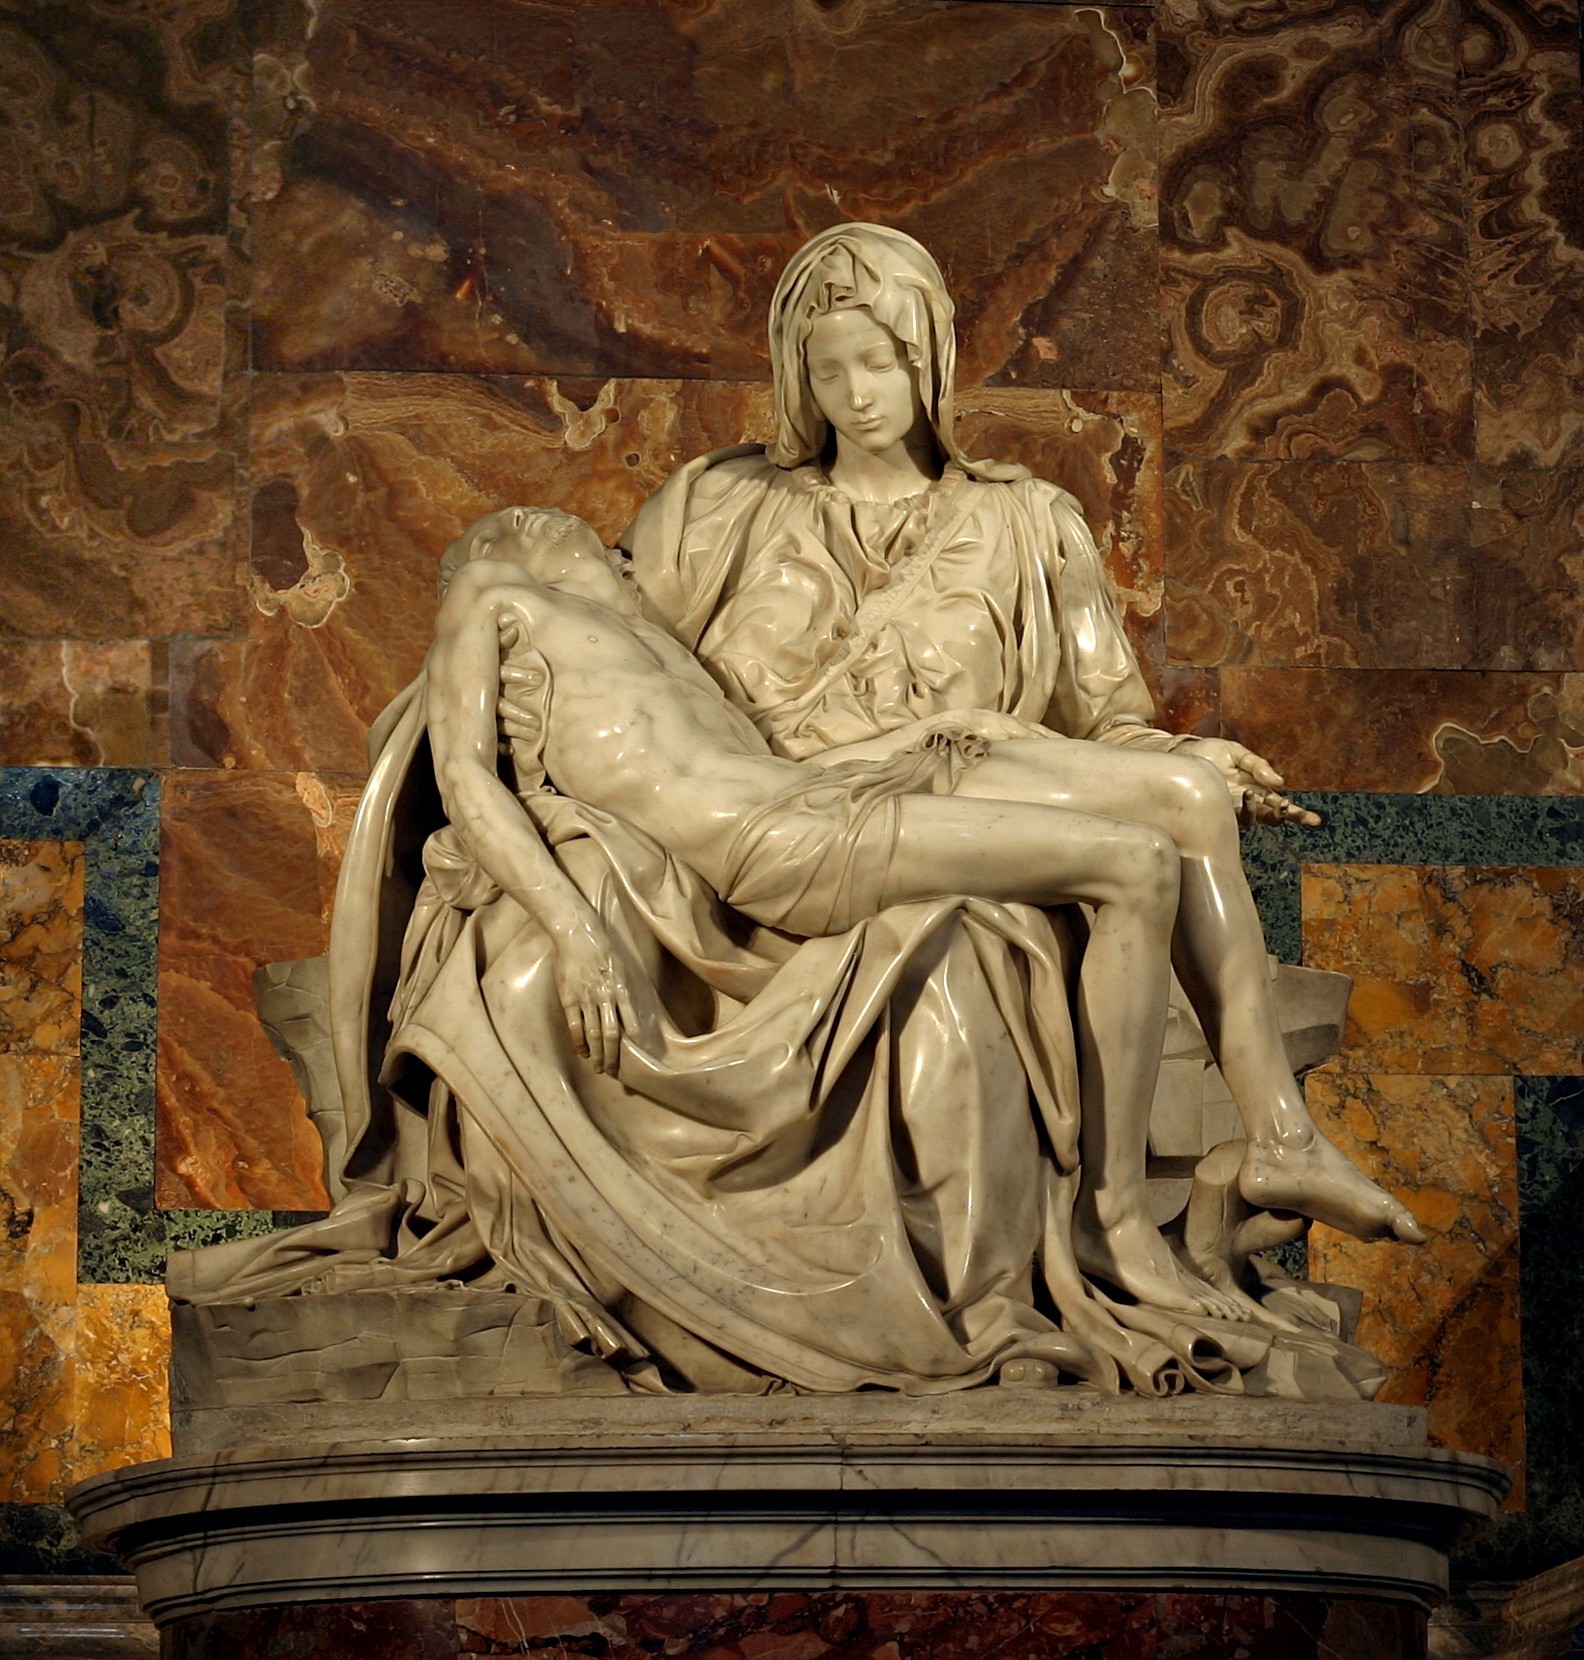 Pietà by Michelangelo di Lodovico Buonarroti Simoni - 1498–1499 - 174 cm × 195 cm 